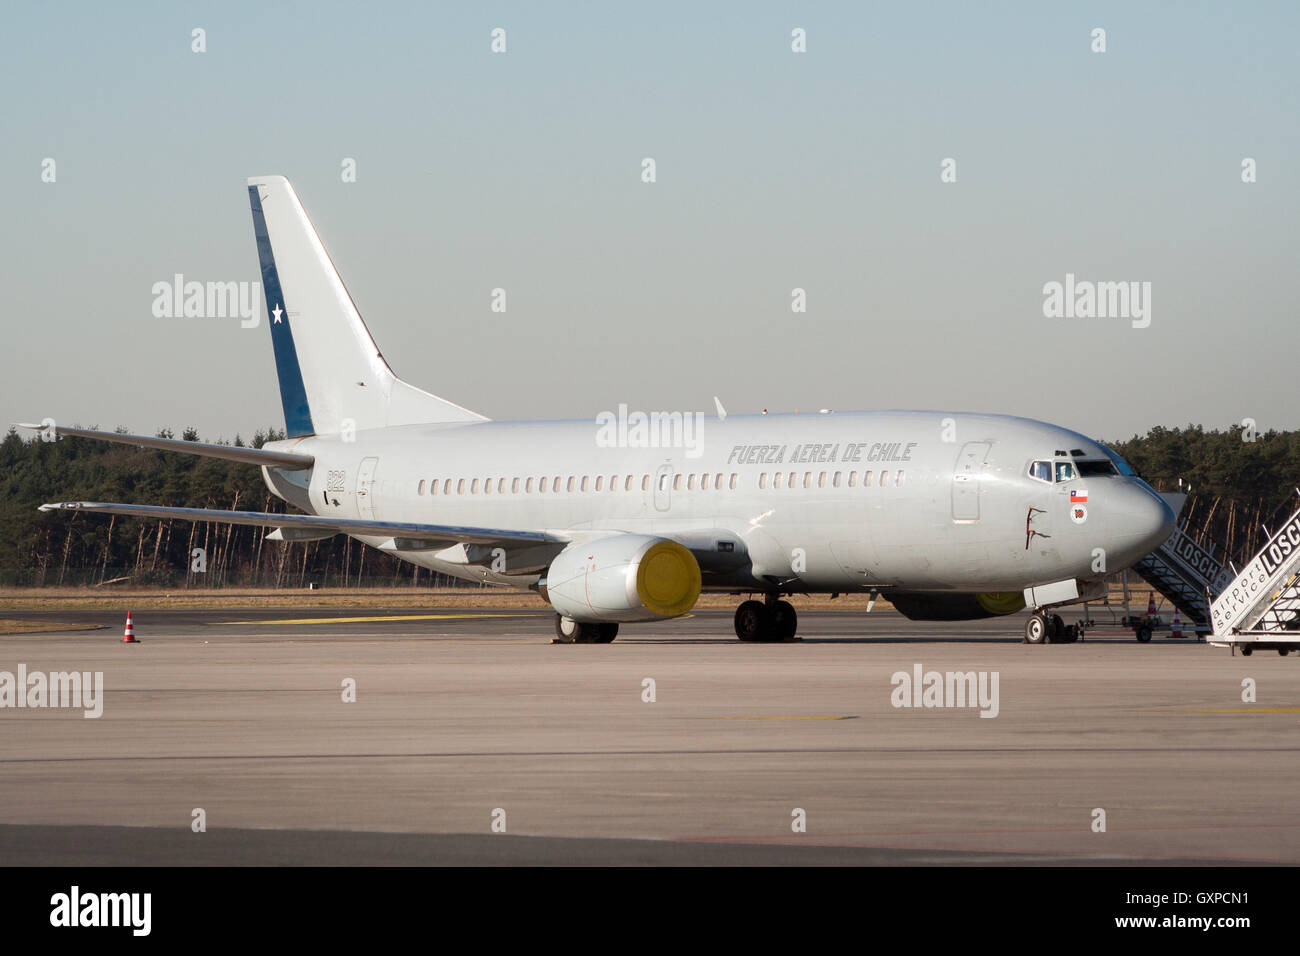 Cileno Air force boeing 737 sulla pista dell'Aeroporto di Niederrhein, Germania Foto Stock